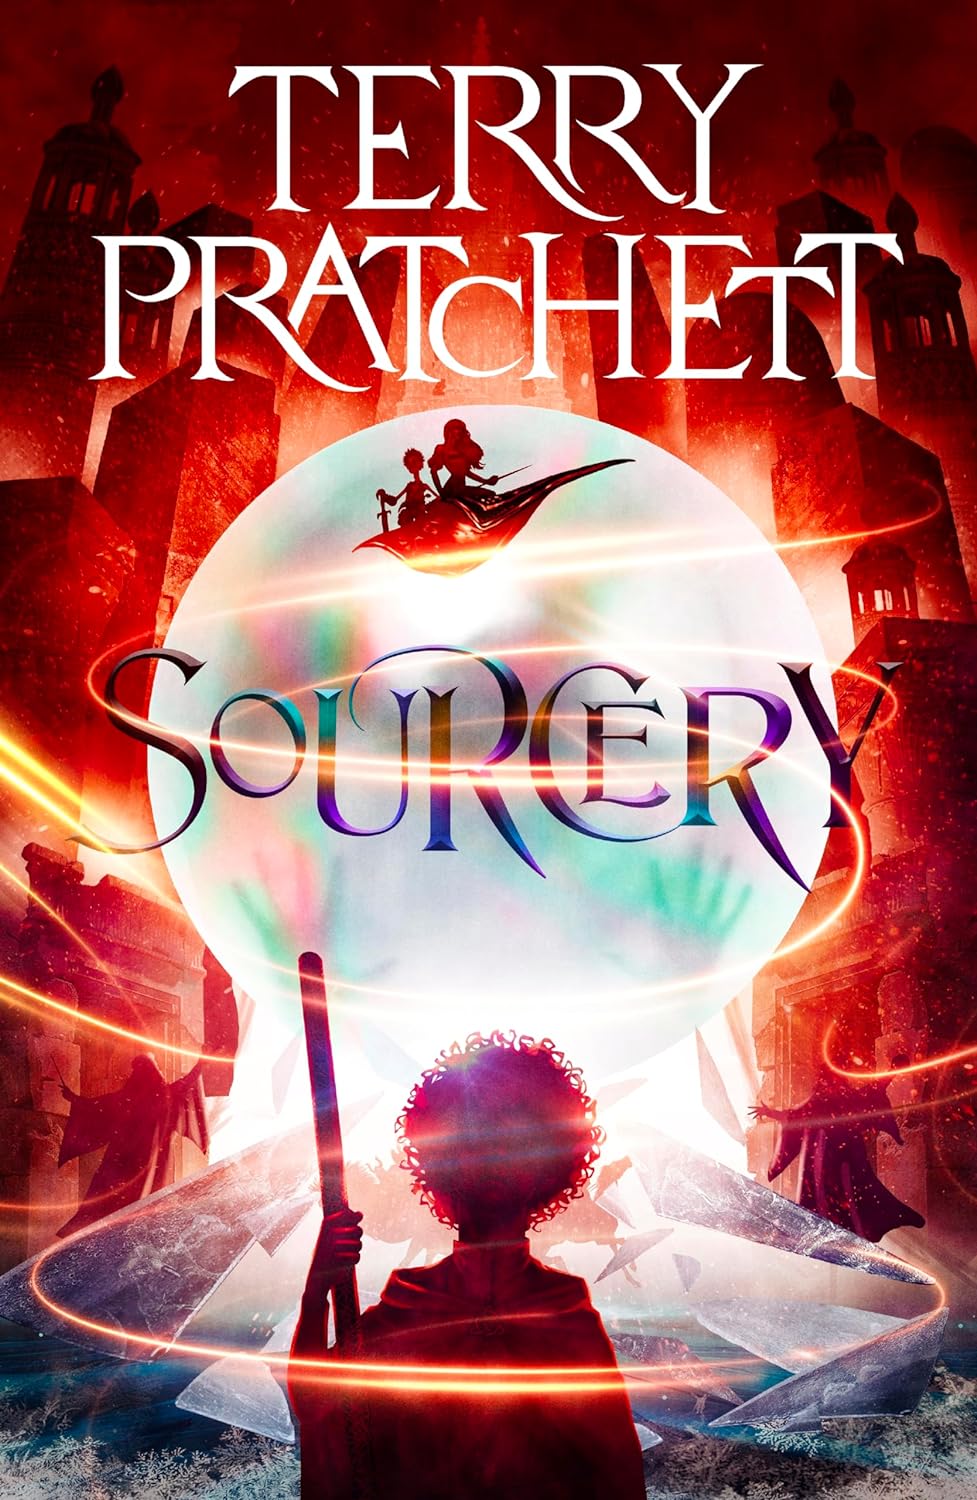 Sourcery, by Terry Pratchett